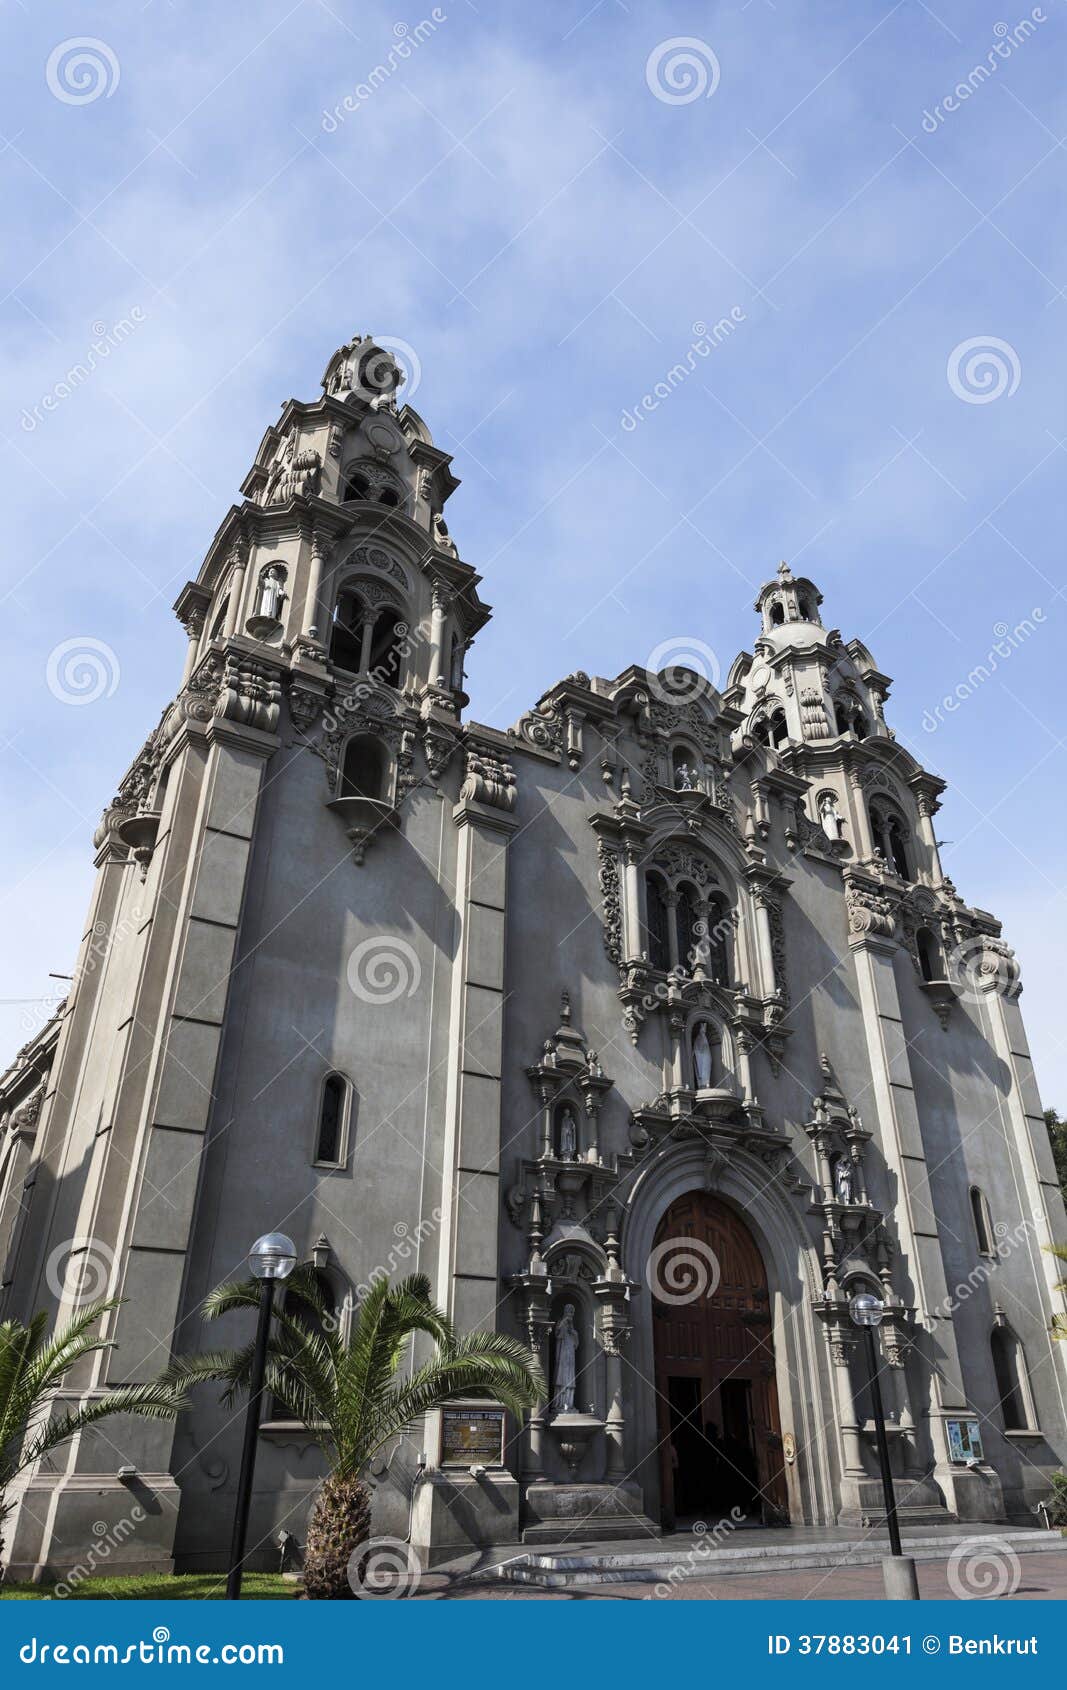 virgen milagrosa church in miraflores, lima